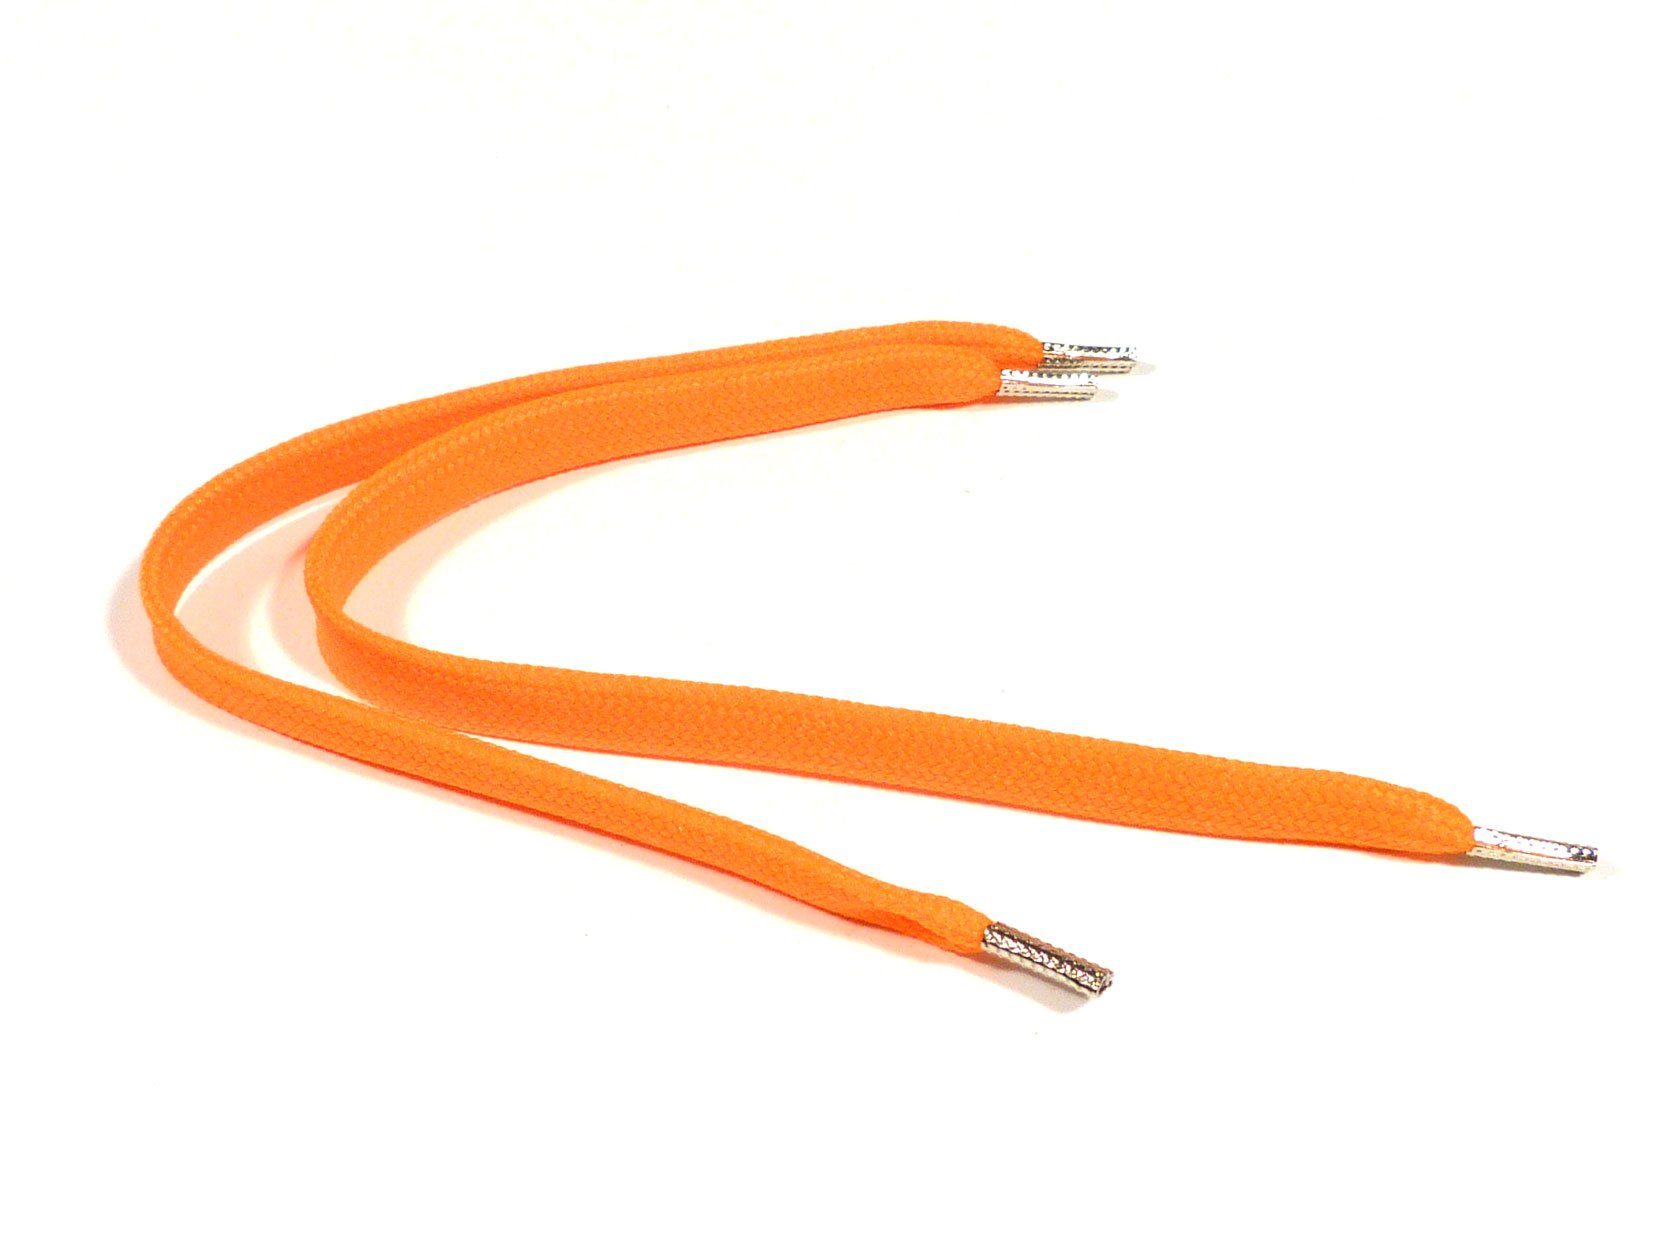 Rema Schnürsenkel Rema Schnürsenkel Orange - flach - ca. 8-10 mm breit für Sie nach Wunschlänge geschnitten und mit Metallenden versehen